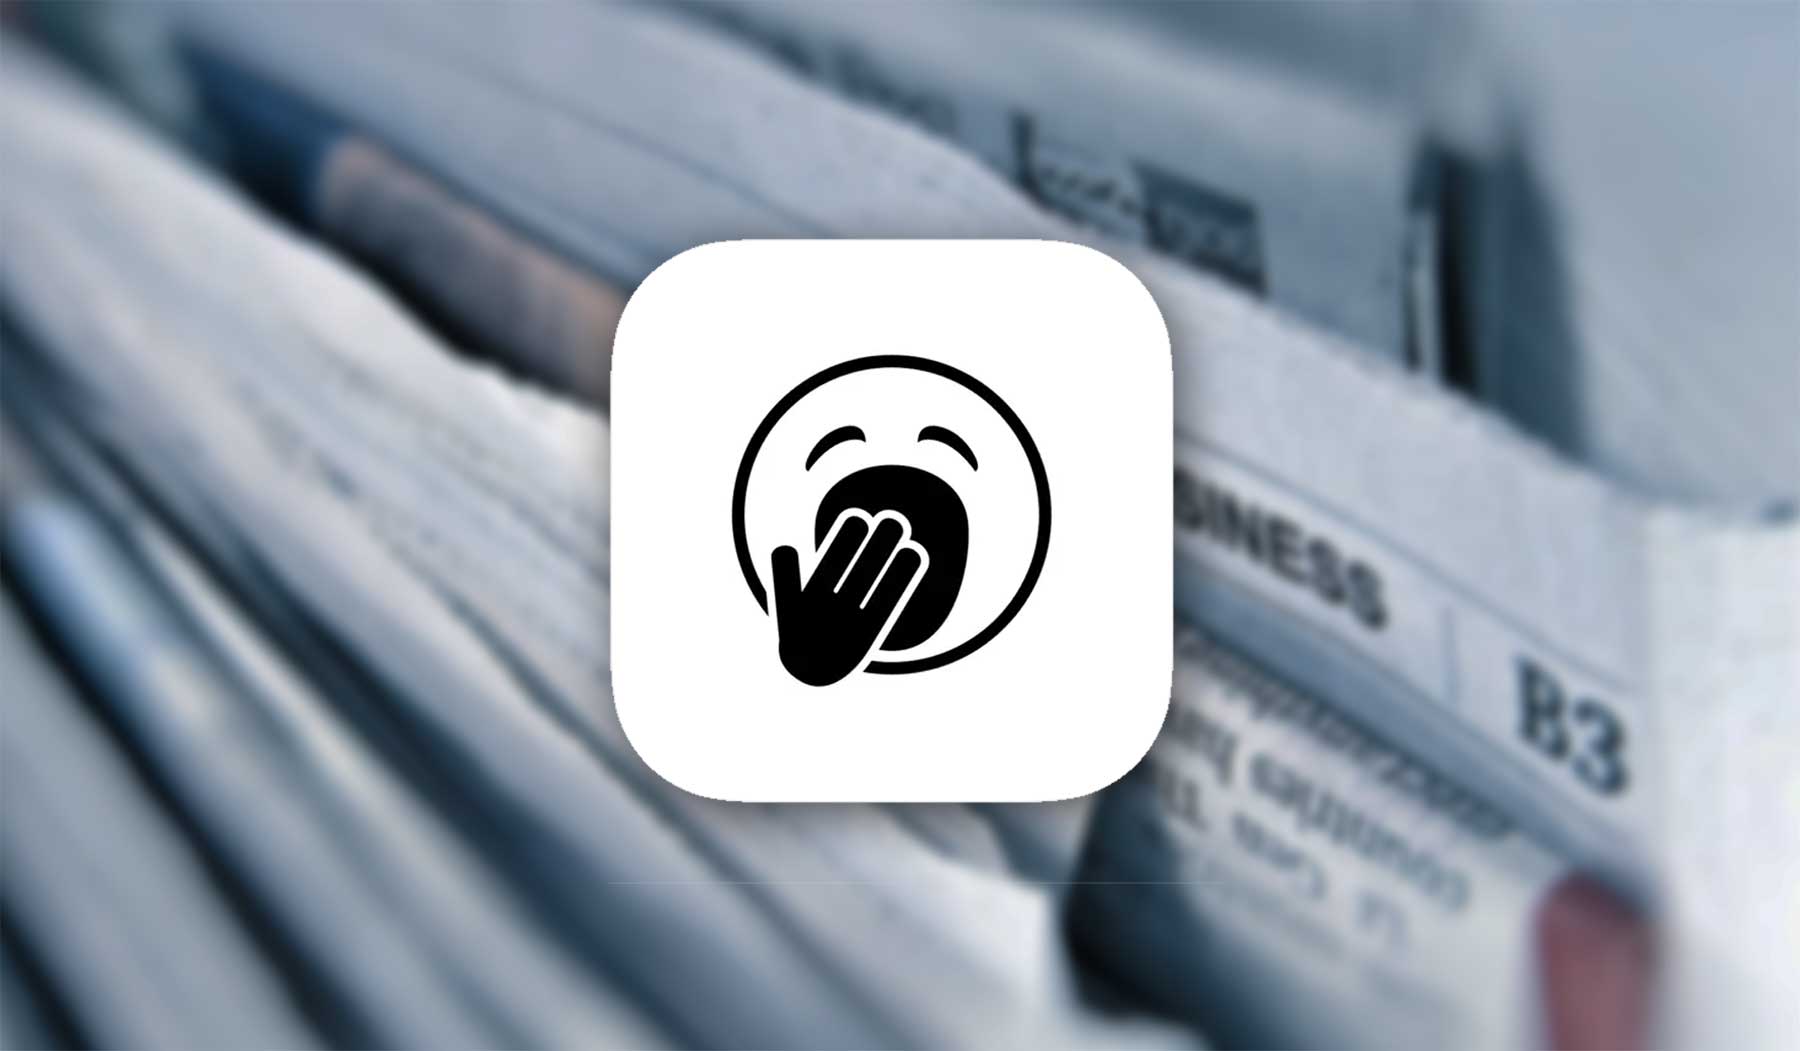 Nachrichten ohne Clickbait & Überflüssiges: "Boring Report" boring-news-app-ki-kuerzt-aufs-wesentliche 